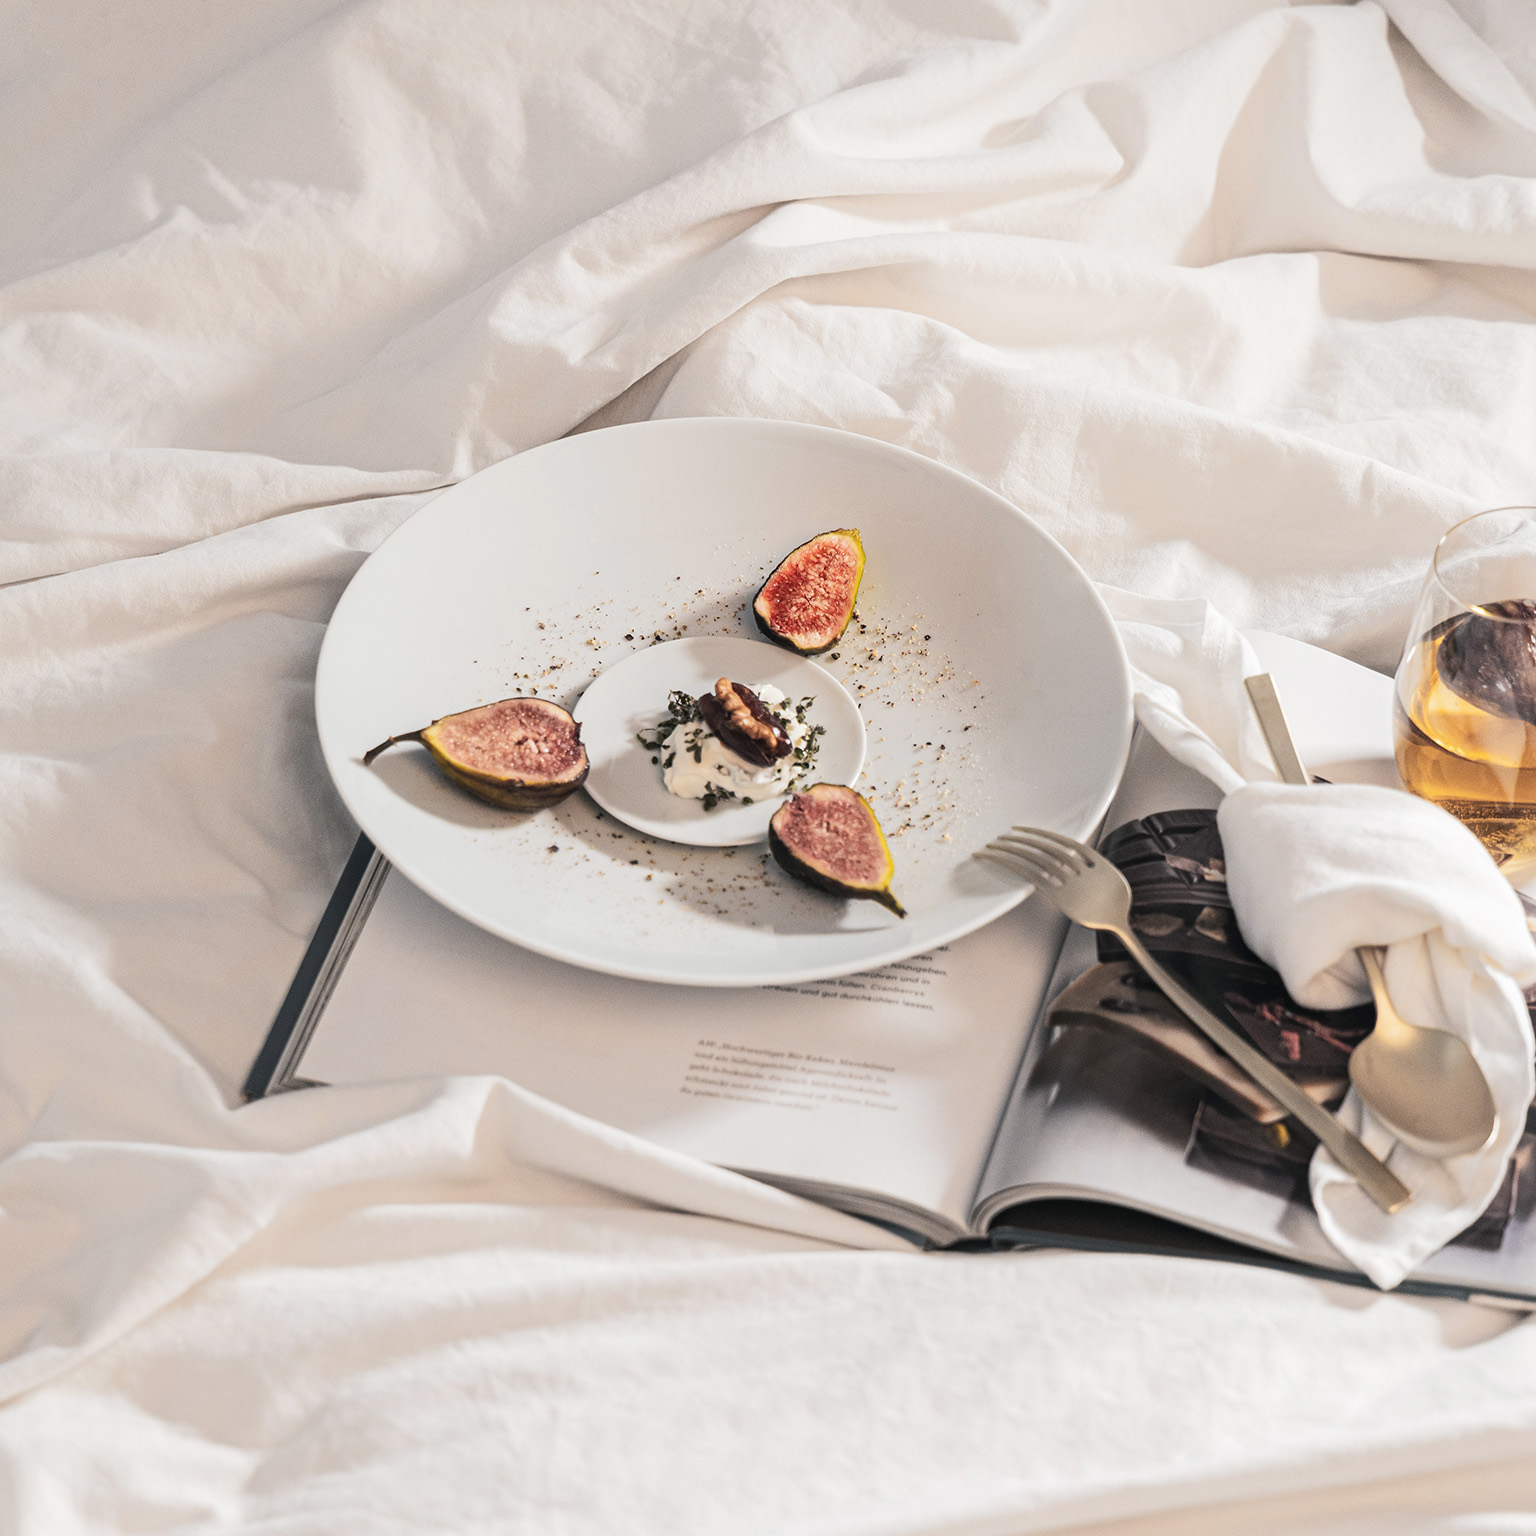 Piatto TAC e piatto di pane guarnito con fichi e dessert giacciono su un lenzuolo da tavolo insieme a un libro aperto, posate, tovagliolo bianco e bicchiere.